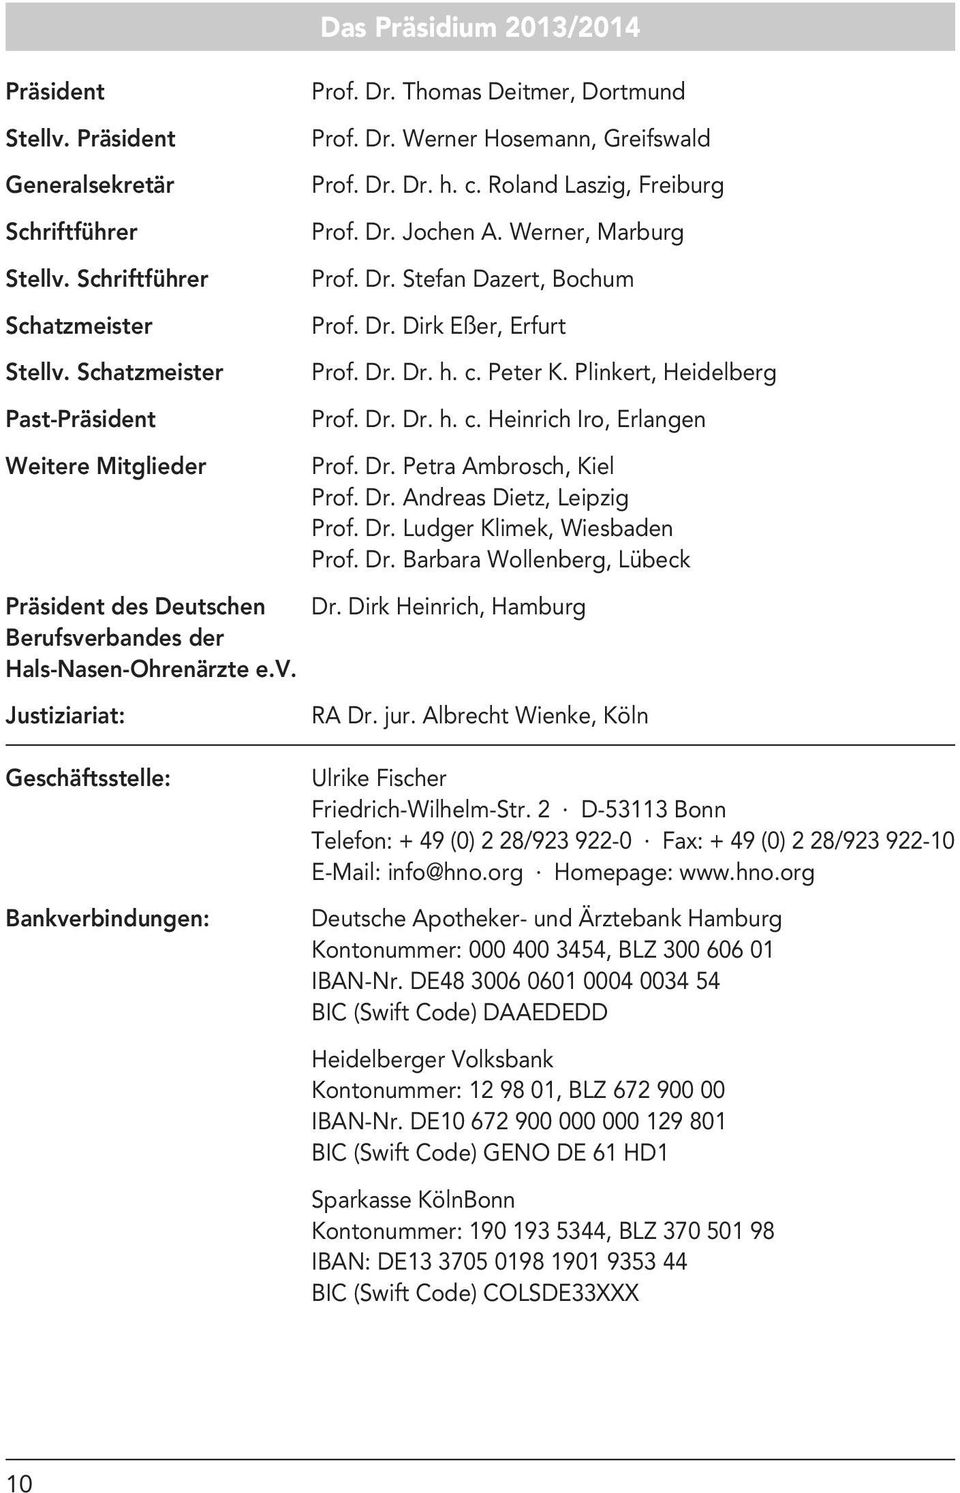 Dr. Dr. h. c. Peter K. Plinkert, Heidelberg Prof. Dr. Dr. h. c. Heinrich Iro, Erlangen Prof. Dr. Petra Ambrosch, Kiel Prof. Dr. Andreas Dietz, Leipzig Prof. Dr. Ludger Klimek, Wiesbaden Prof. Dr. Barbara Wollenberg, Lübeck Präsident des Deutschen Dr.